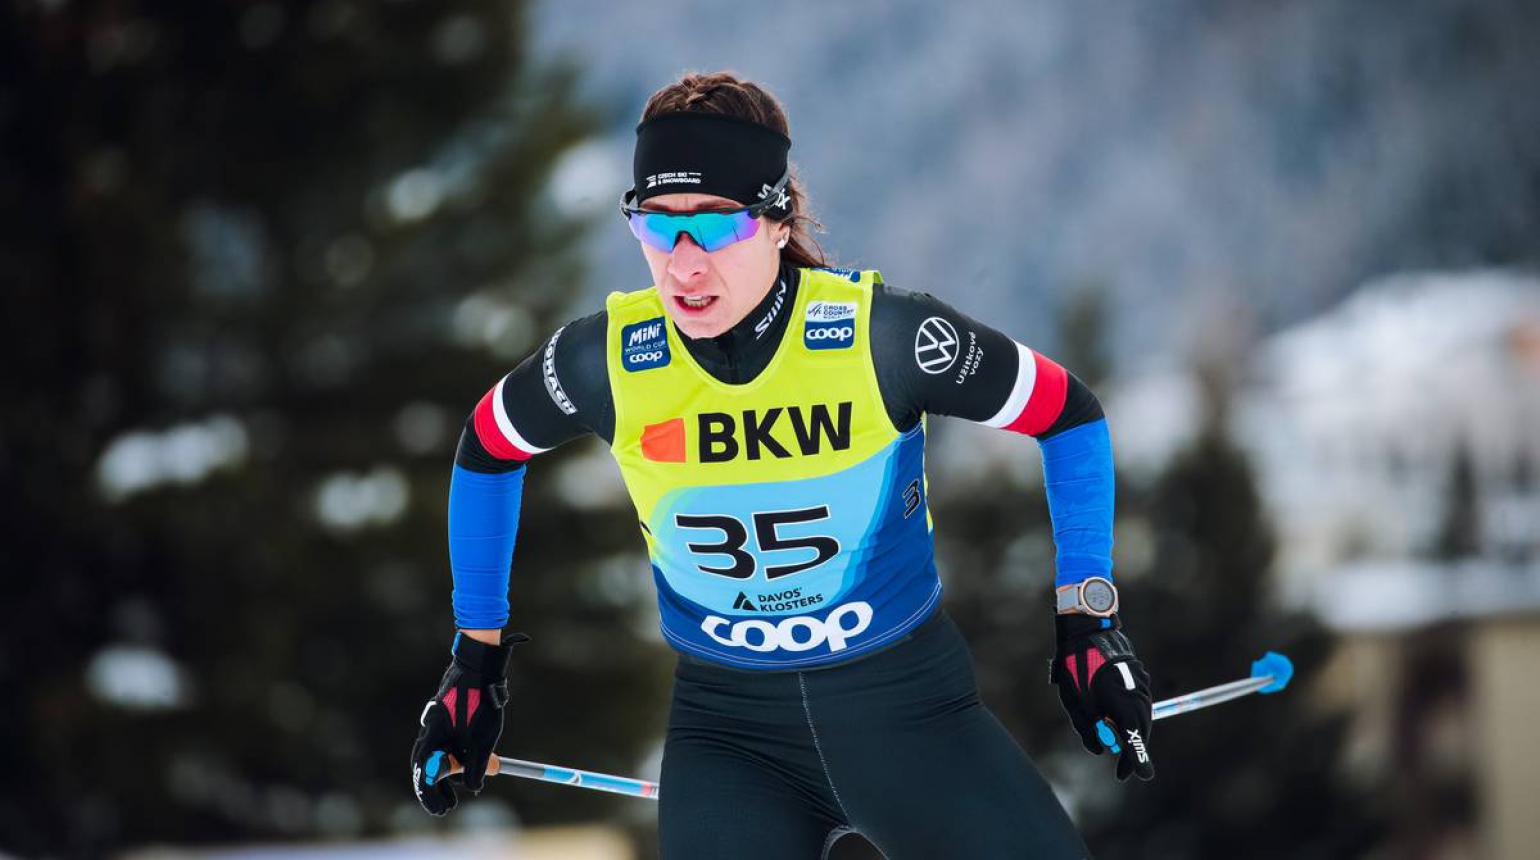 Na desítce volně byla při Světovém poháru v Davosu z českých běžkyň nejlepší Hynčicová na 44. místě